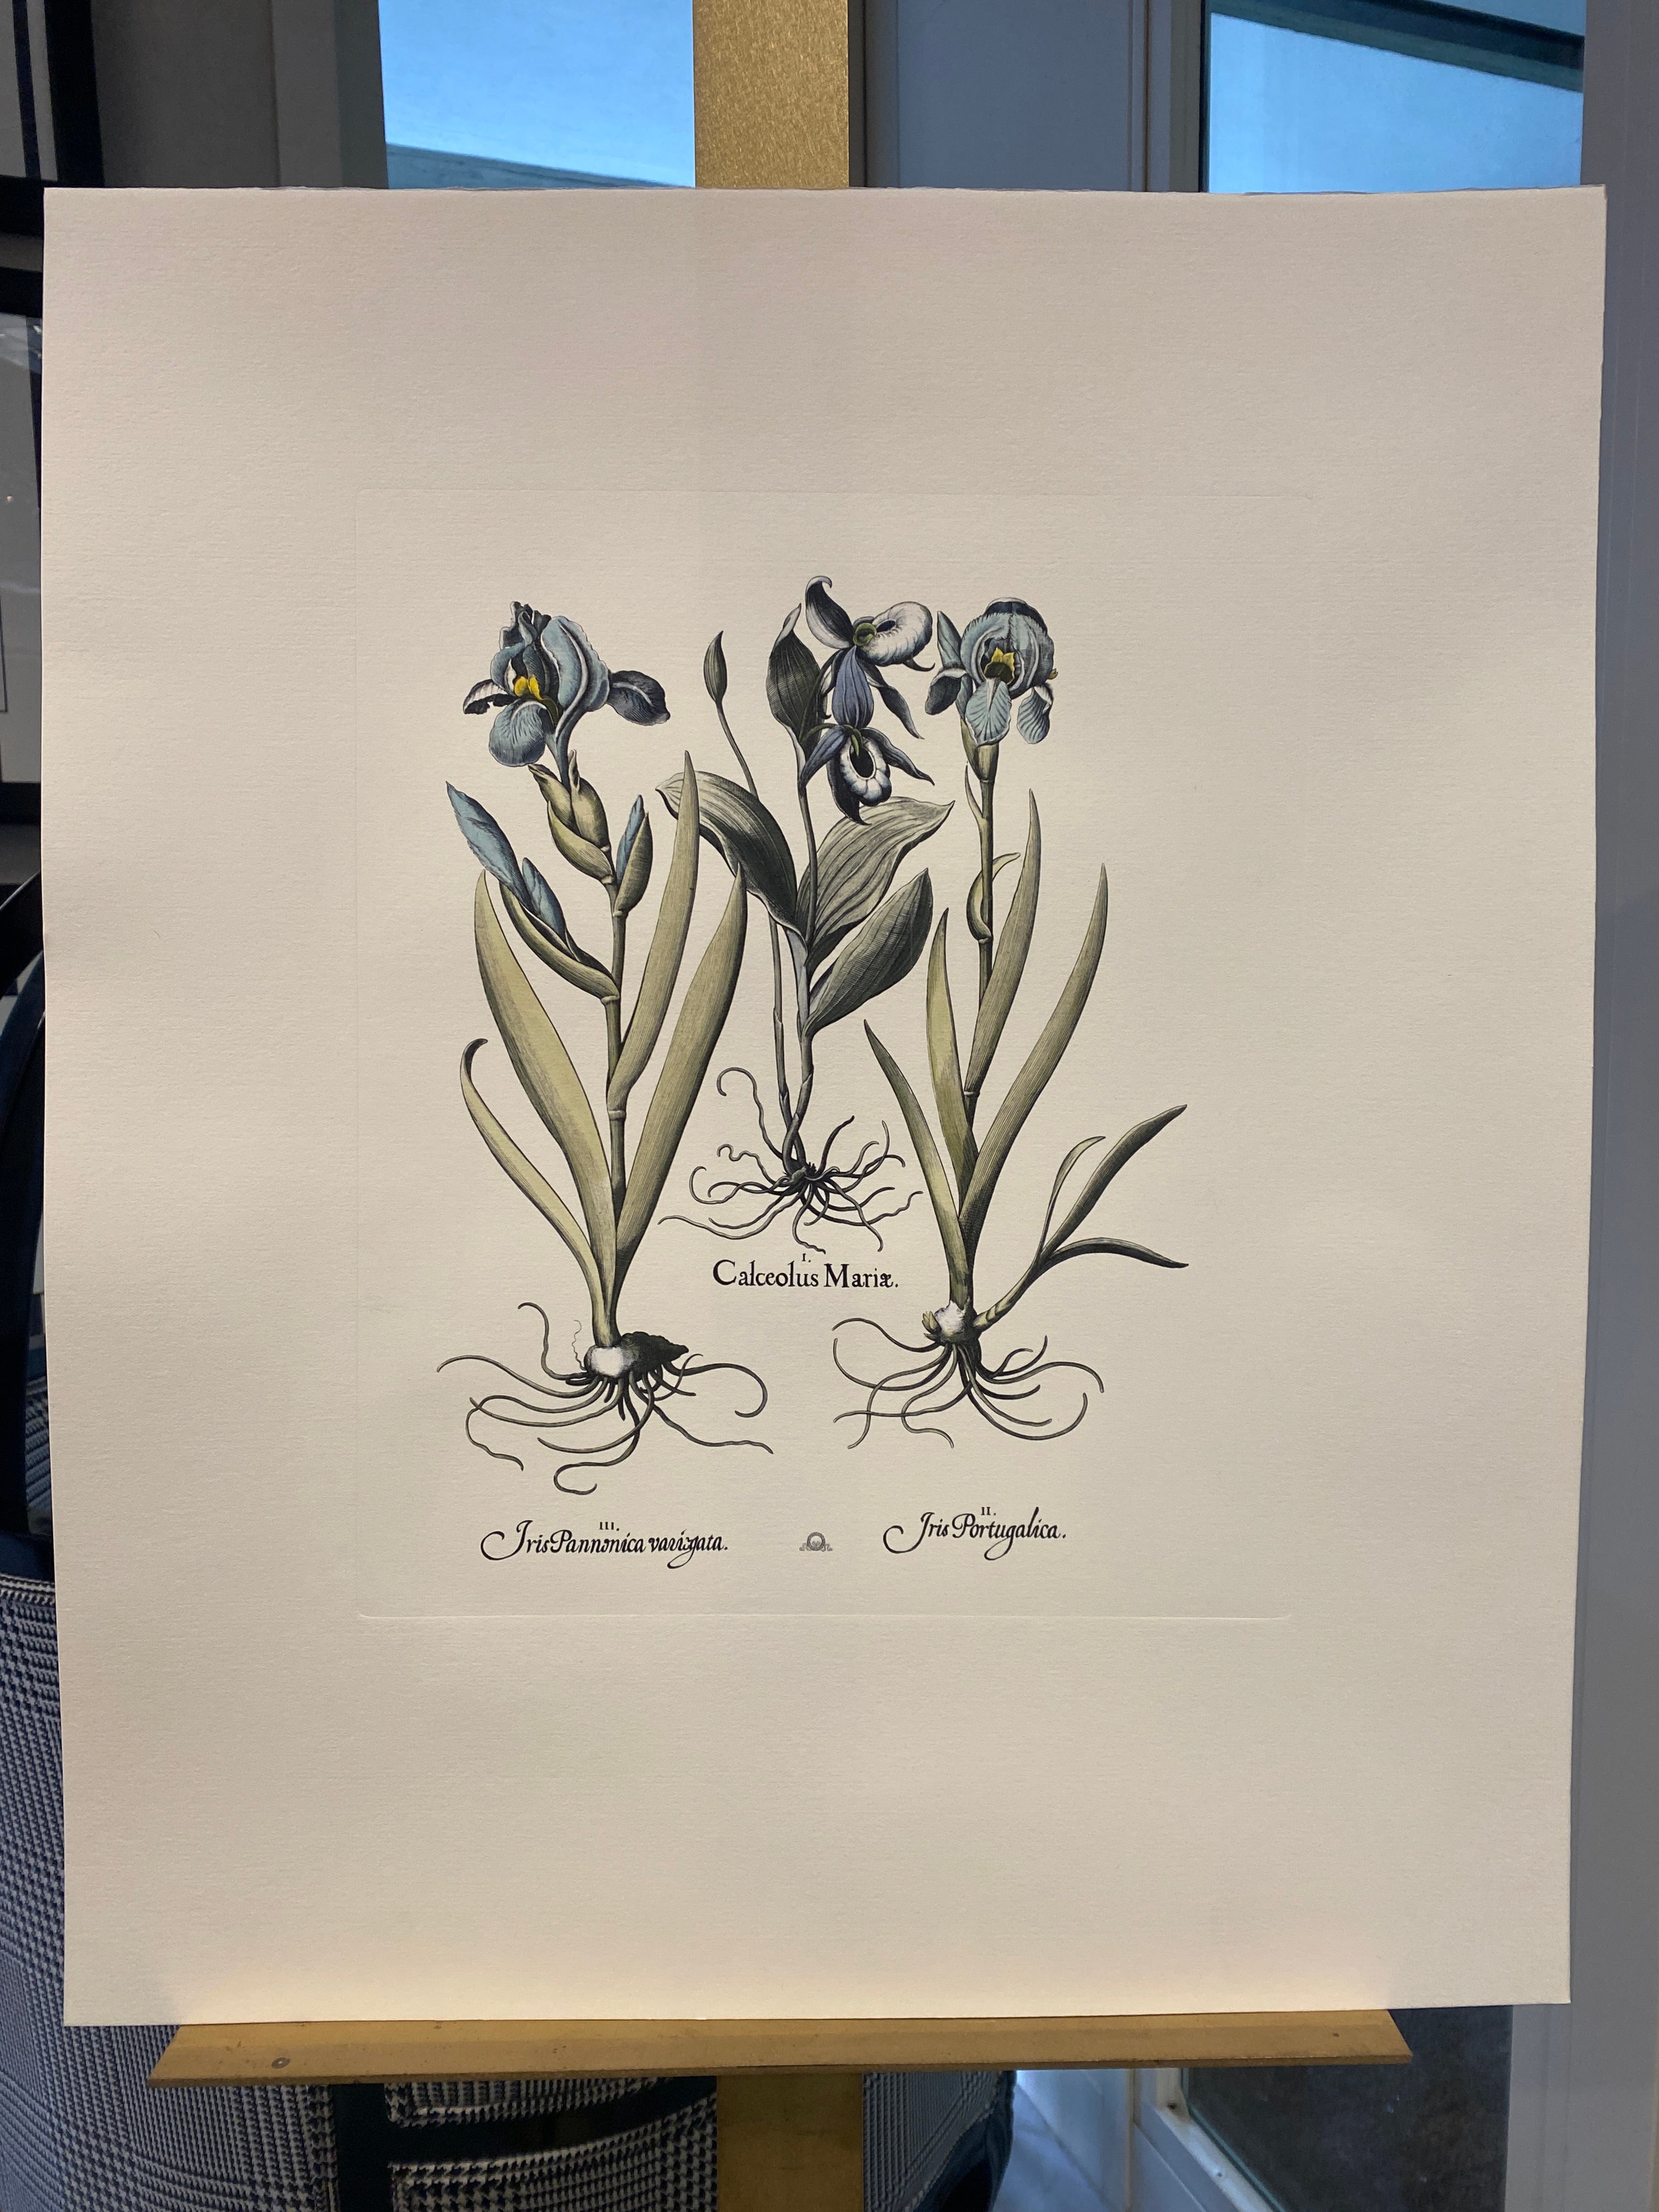 Druck aus der Collection Botanique Bulbacee, der Tulipa und Allium darstellt, angereichert mit blauen Farben und Nuancen von Aquarell.

Für eine farbenfrohe Komposition stehen auch verschiedene Blumendrucke von Bulbacee zur Verfügung, die von einem